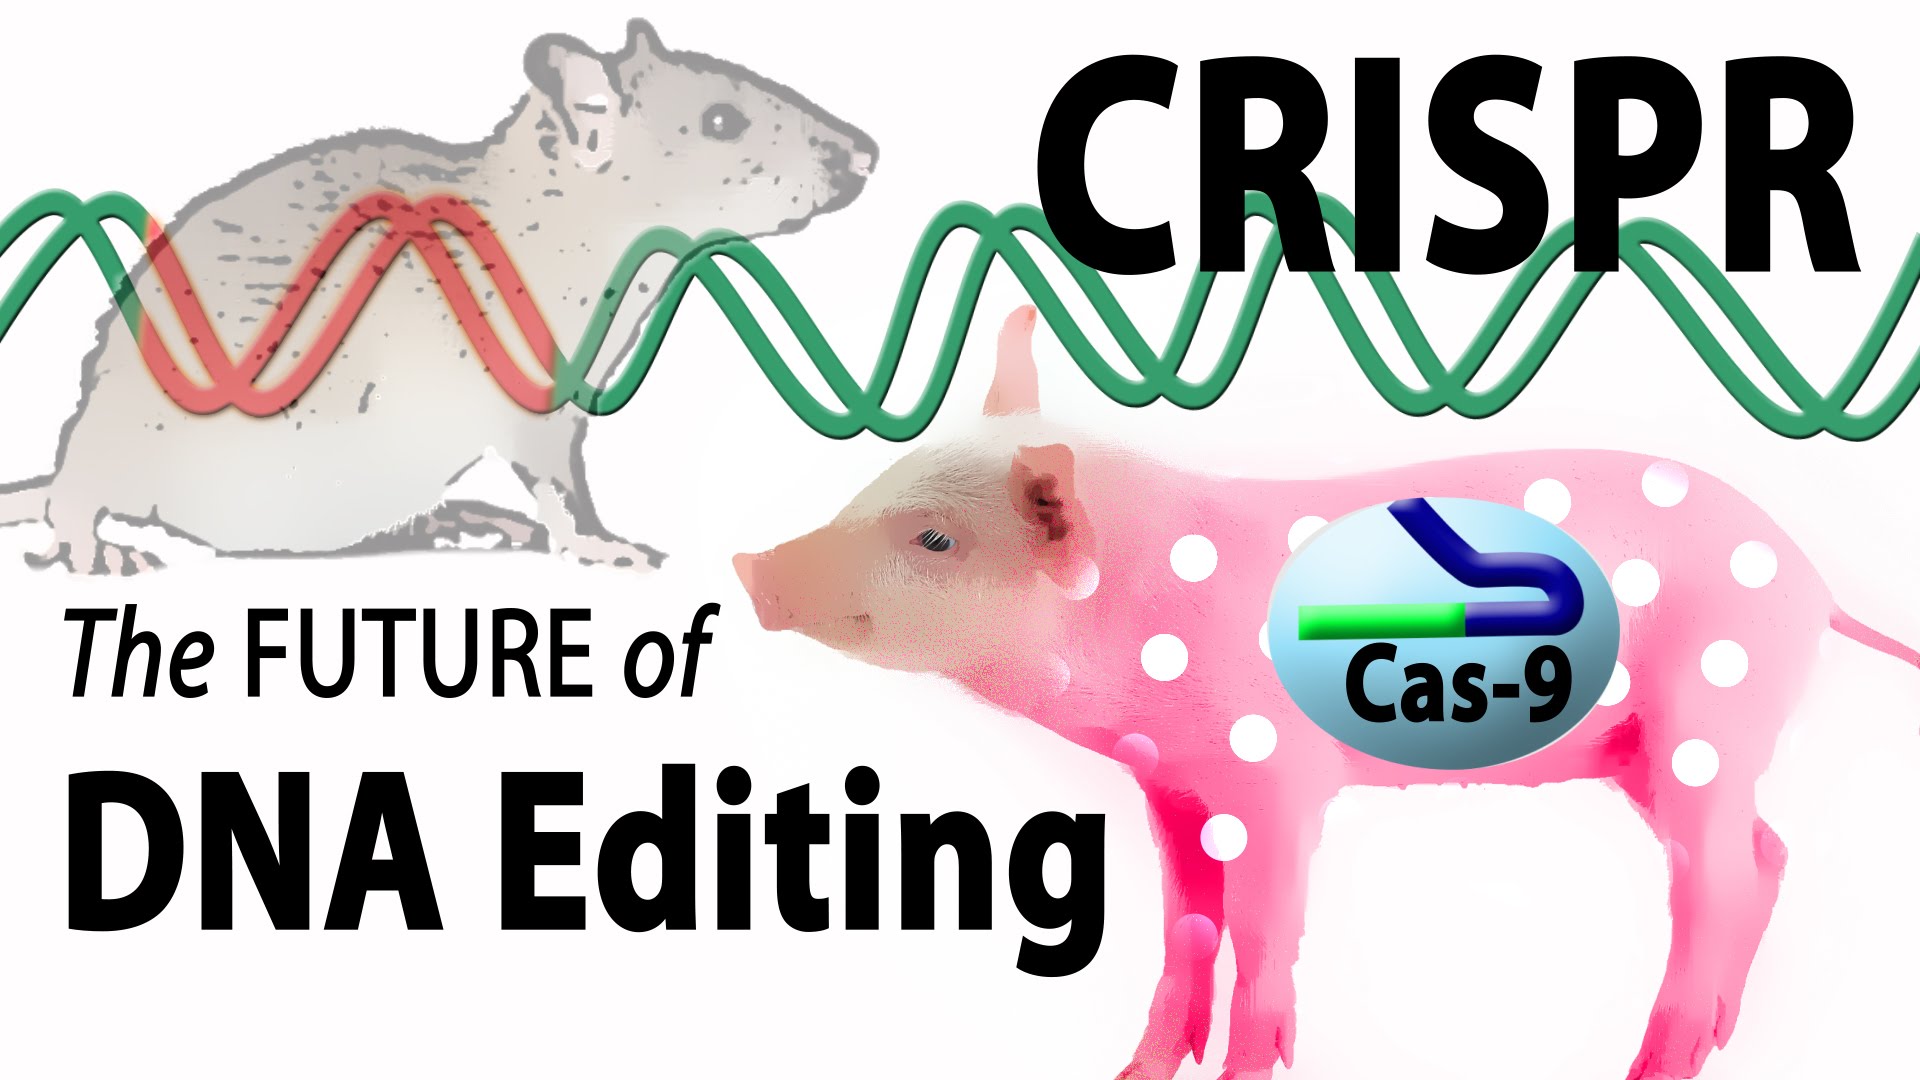 کریسپر, crispr, مقاله کریسپر, کریسپر+pdf, کریسپر در ایران, کریسپر به زبان ساده, کریسپر کاس, روش crispr, سیستم crispr, ویرایش ژنوم, CRISPR، crispr چیست؟, pre-crRNA,  spacer، تکنیک کریسپر, روش crispr , ساختار ژنی کریسپر, سیستم CRISPR/Cas , سیستم ویرایش ژنومی کریسپر/Cas , فناوری کریسپر , کریسپر, کریسپر pdf ,کریسپر چیست؟ , کریسپر+ppt, کمپلکس Cas, مکانیسم کریسپر,نقش سیستم کریسپر/Casدر باکتری , فرایند کریسپر کَس ۹ چیست, عملکرد کریسپرـ کَس ۹, آینده کریسپرـ کَس ۹, ویرایش ژنی کریسپر, تکنیک ژنی کریسپر, CRISPR 2.0, اصلاح ژن "کریسپر" , بدون استفاده از قیچی, دستاورد مهم کریسپر , در مسیر درمان بیماری‌ها, 